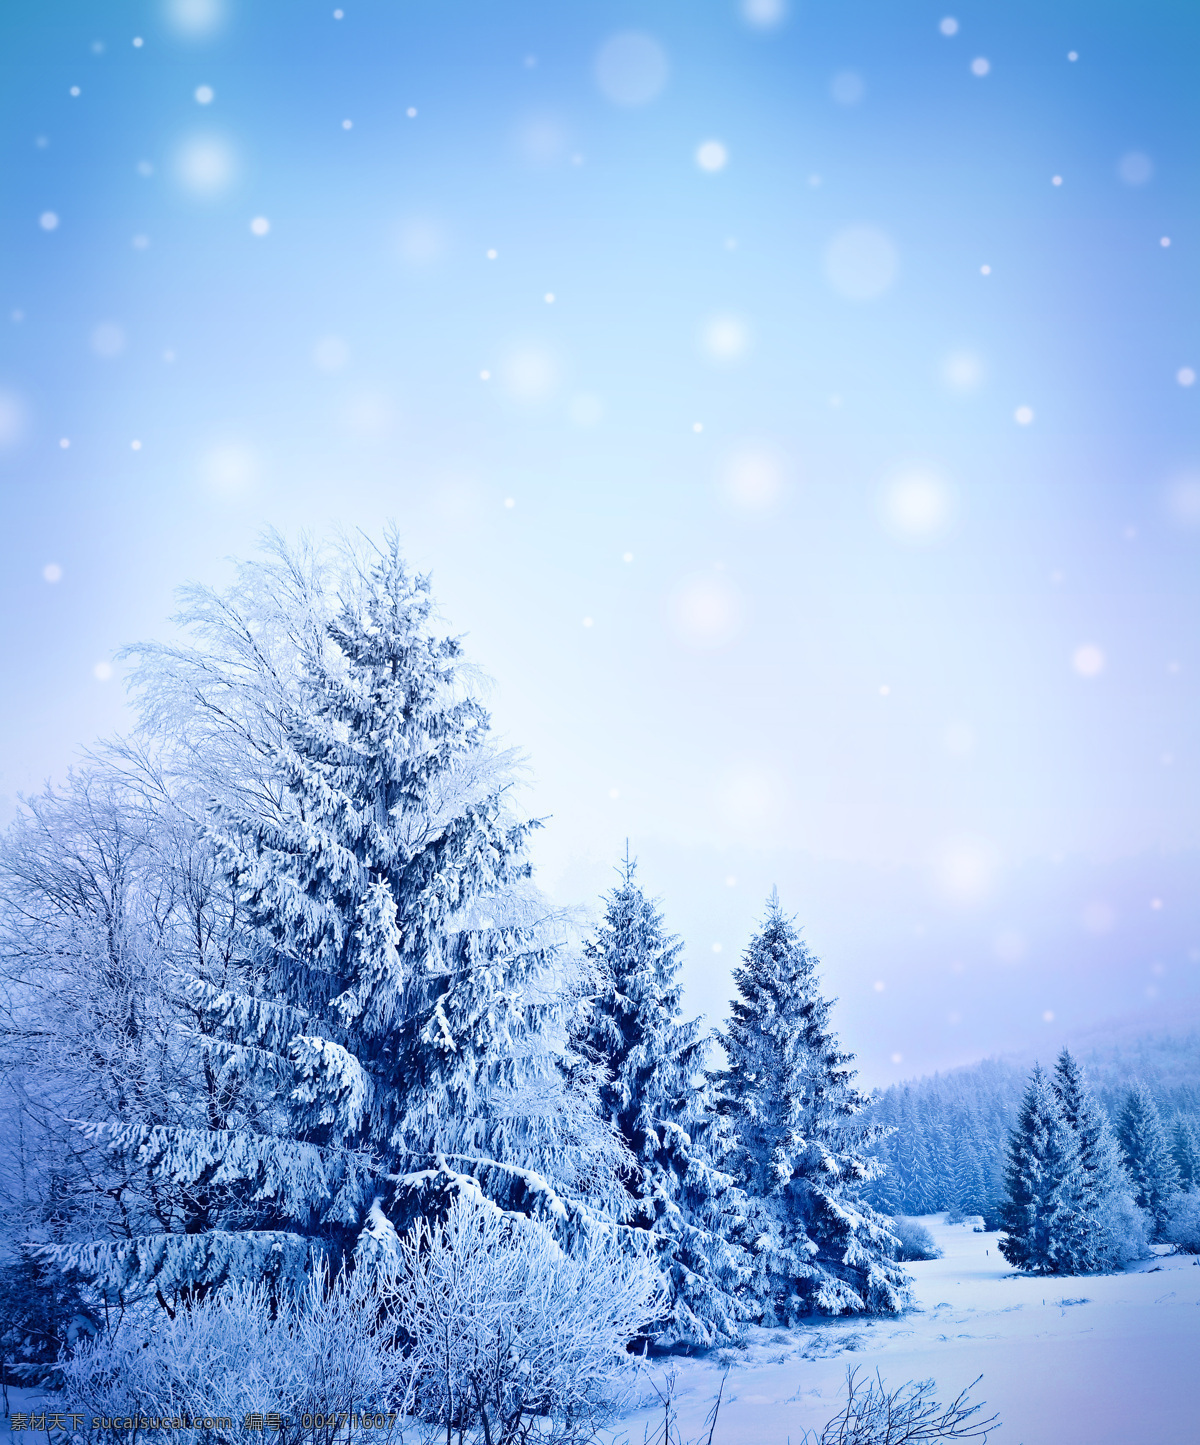 冬天雪景摄影 冬天雪景 雪地 美丽雪景 梦幻背景 自然风景 冬天风景 自然景观 蓝色